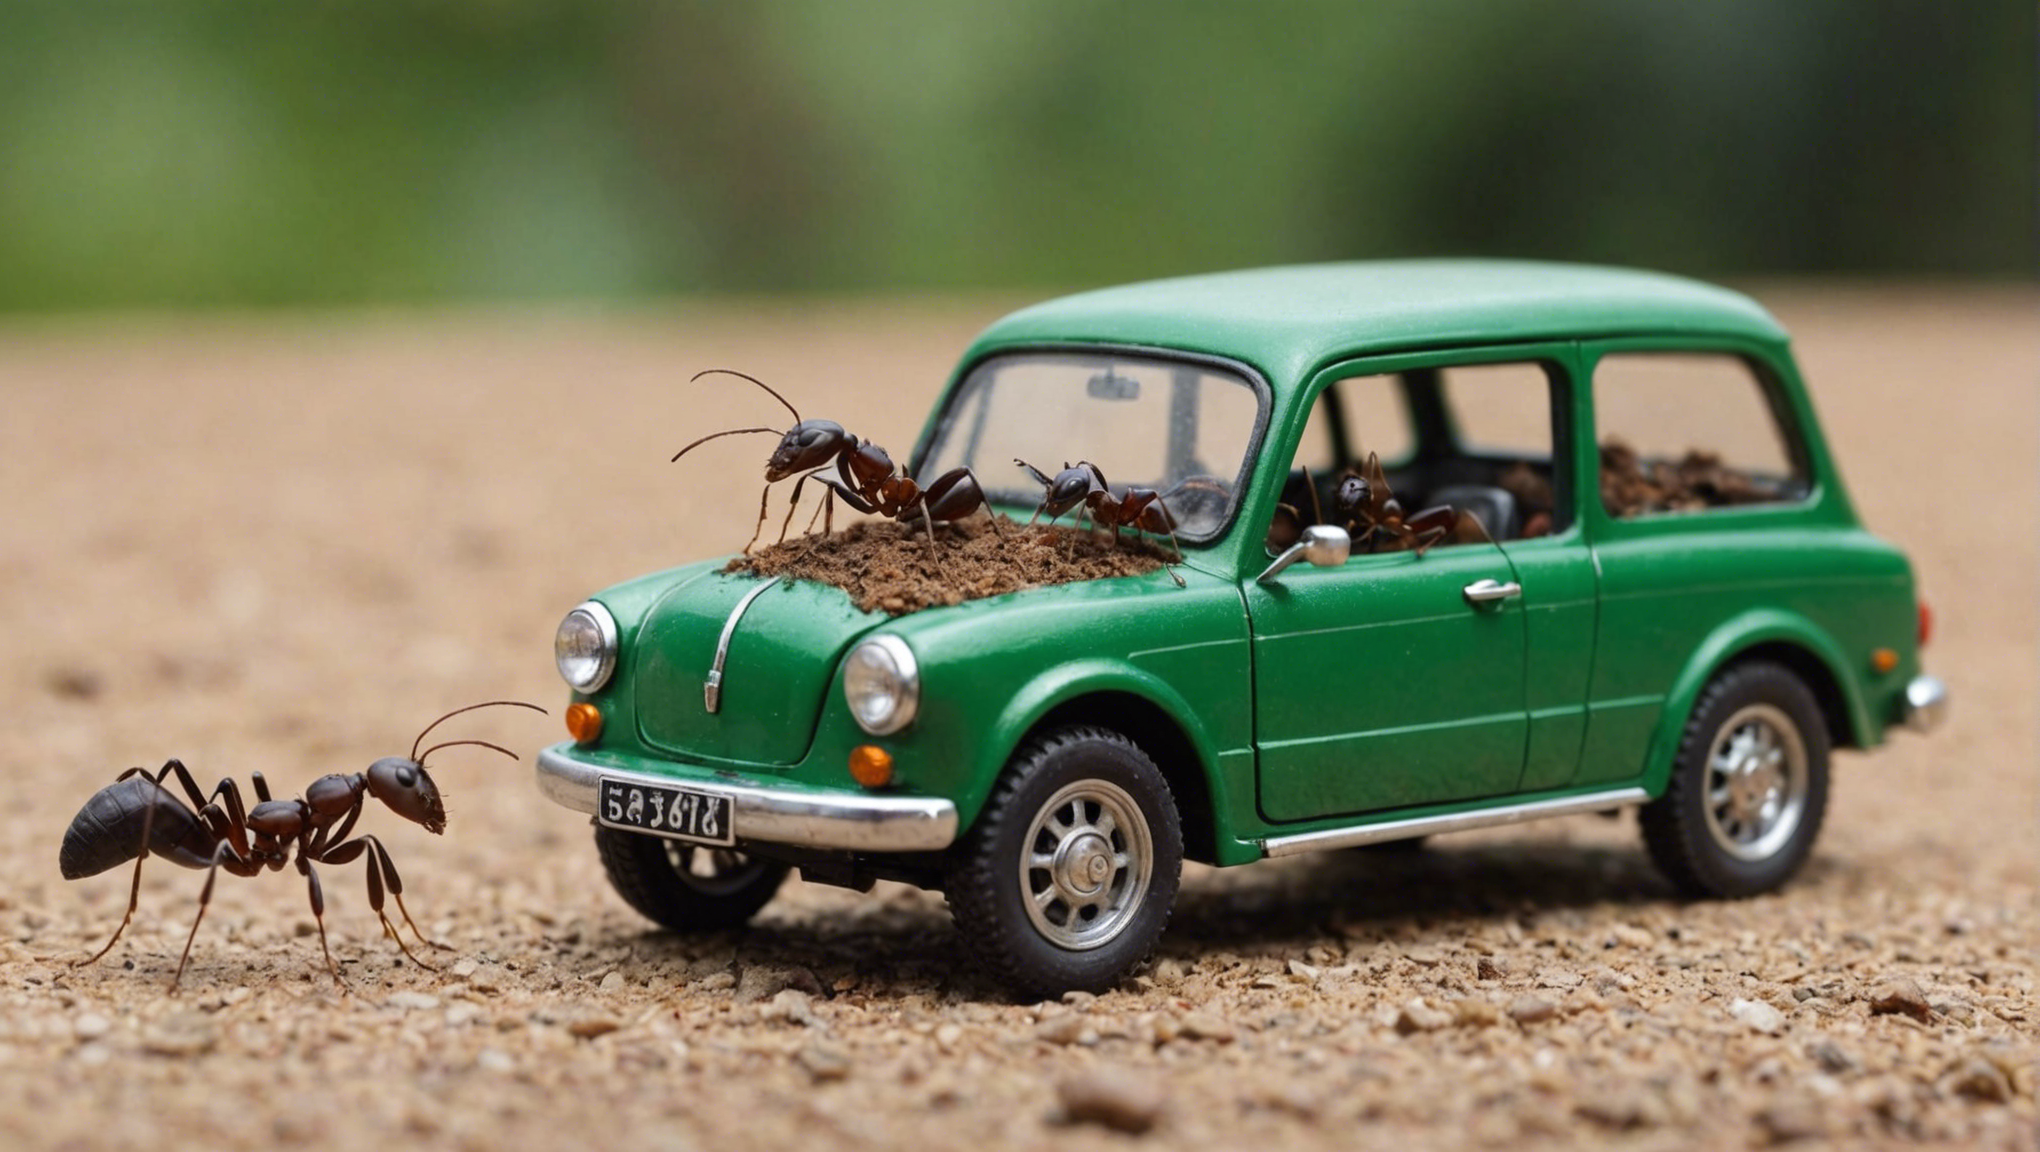 découvrez pourquoi les fourmis ont besoin de véhicules et comment elles les utilisent pour leurs déplacements dans cet article fascinant.